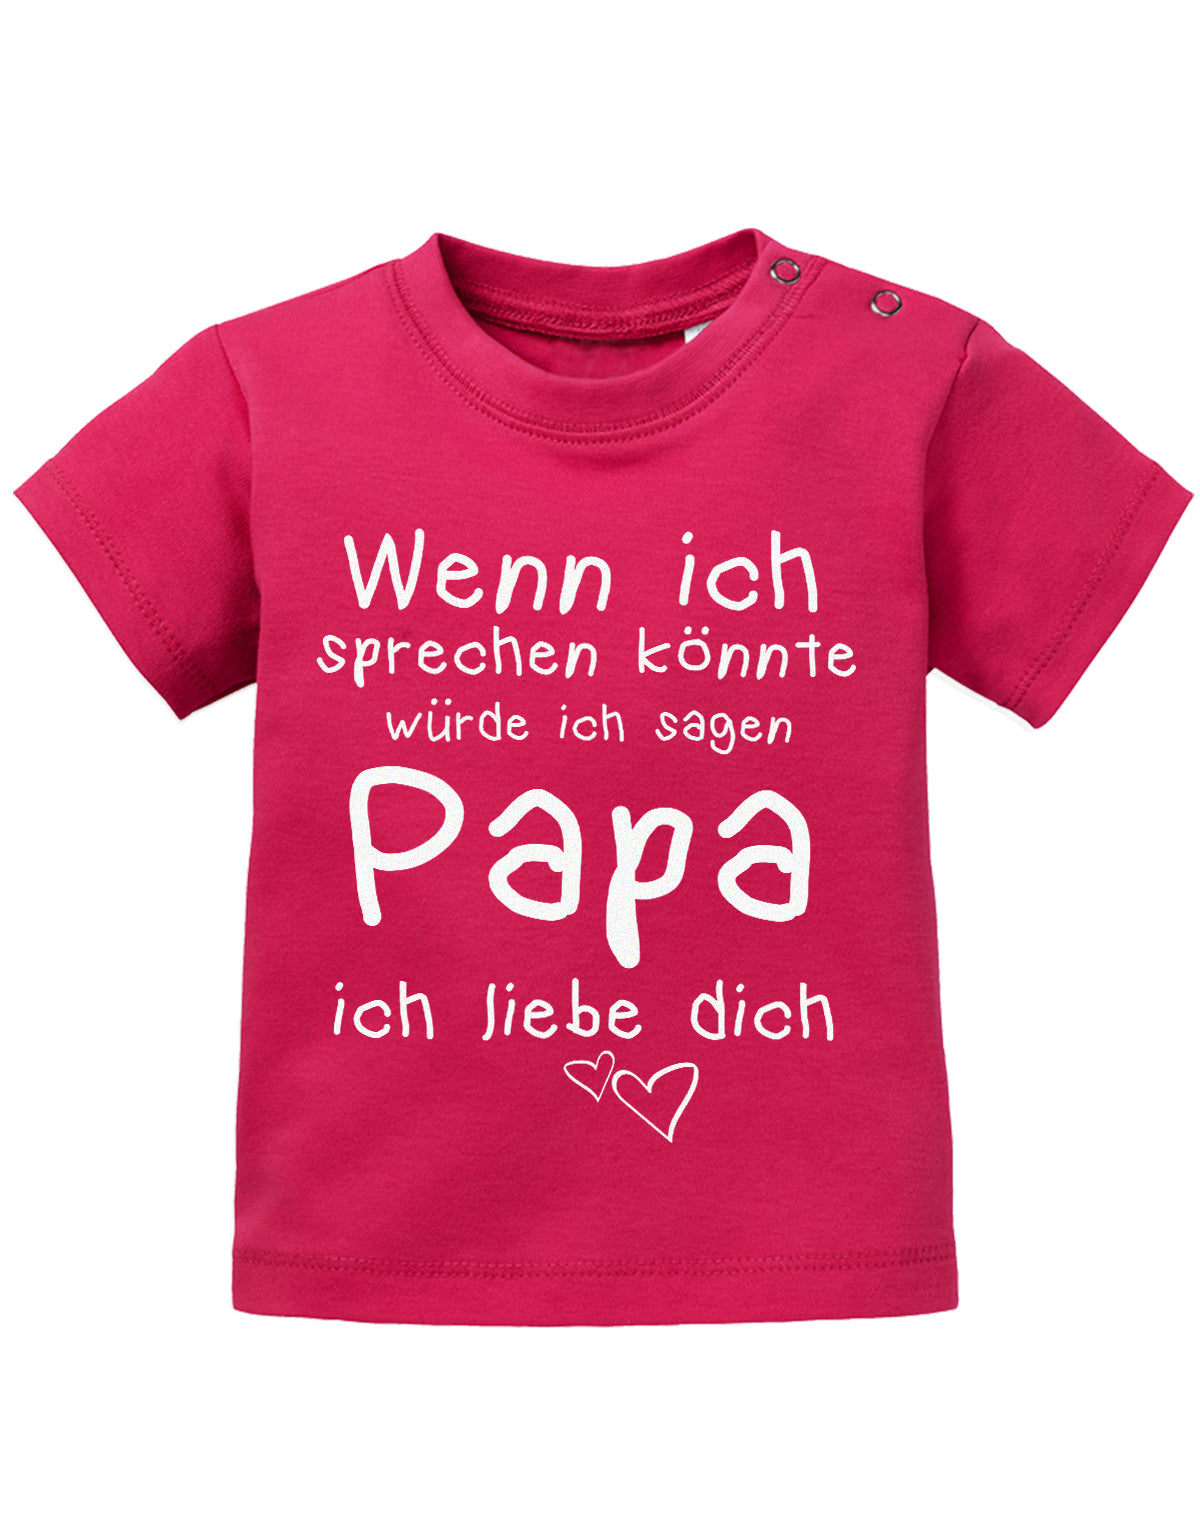 Papa Spruch Baby Shirt. Wenn ich sprechen könnte, würde ich sagen Papa, ich liebe Dich. Sorbet